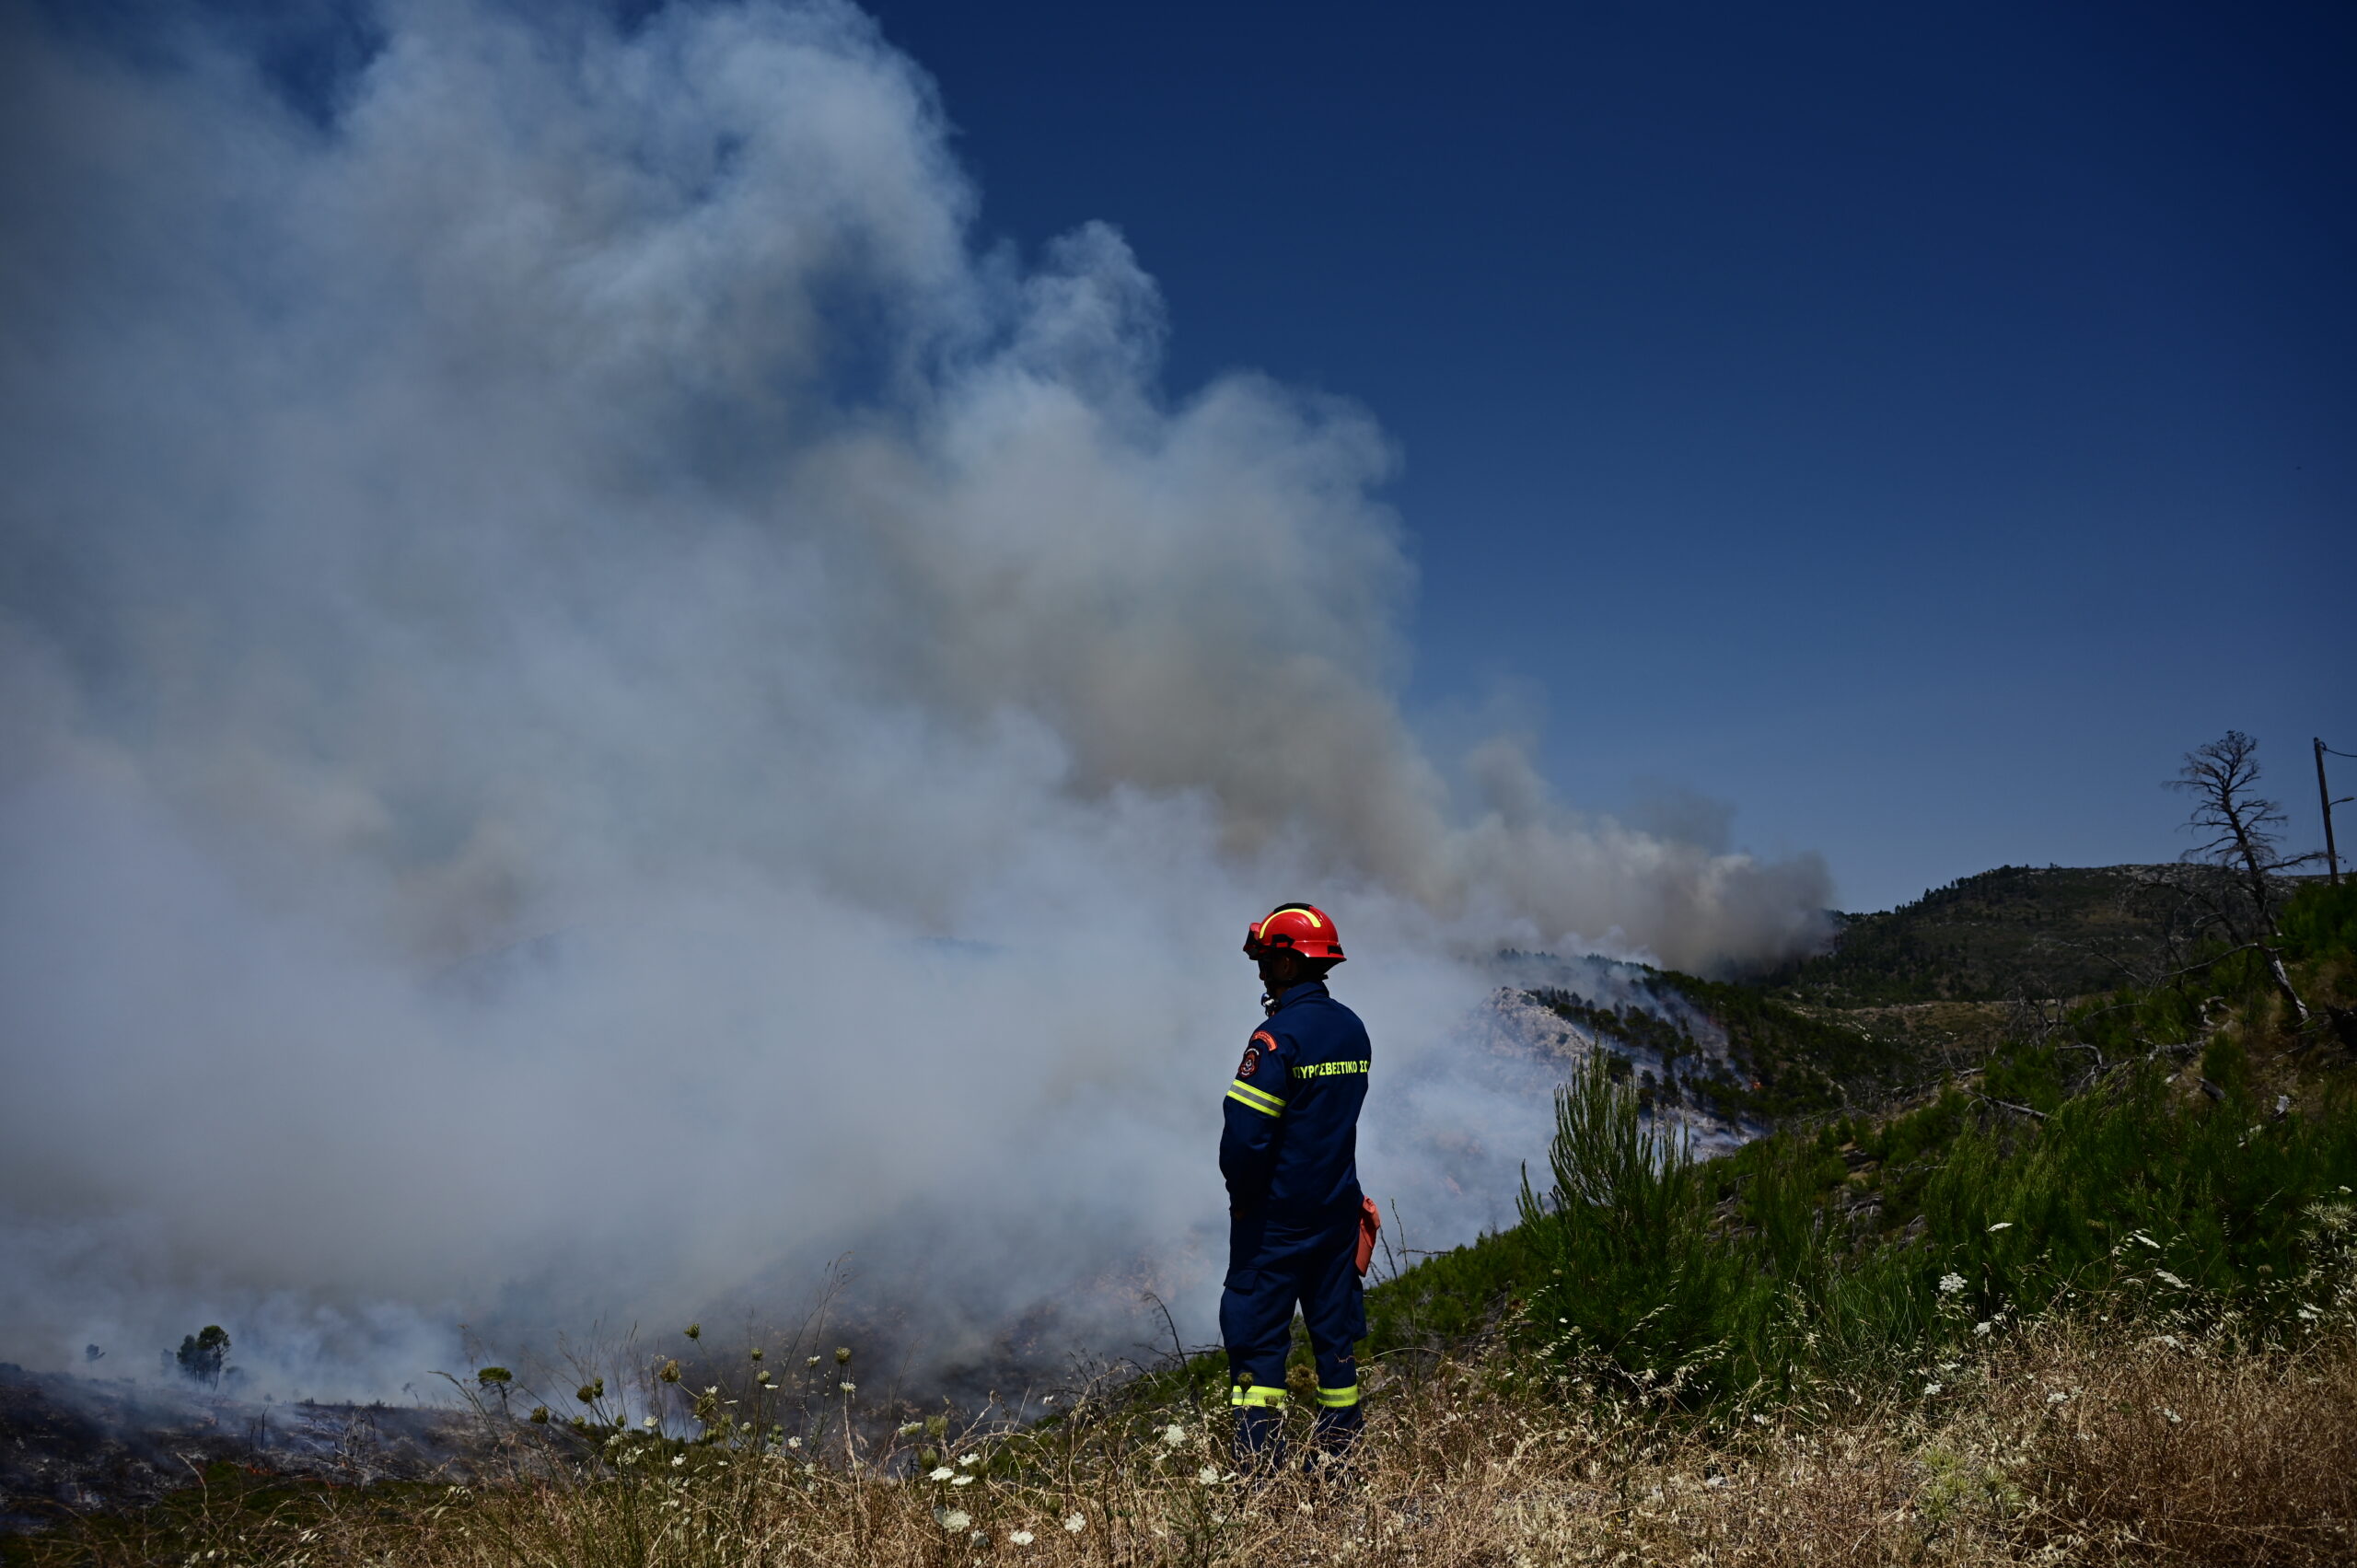 Ευρωπαϊκή συνδρομή για τις πυρκαγιές: 2 καναντέρ και 18 πυροσβέστες στέλνει η Γαλλία και 2 καναντέρ η Ιταλία